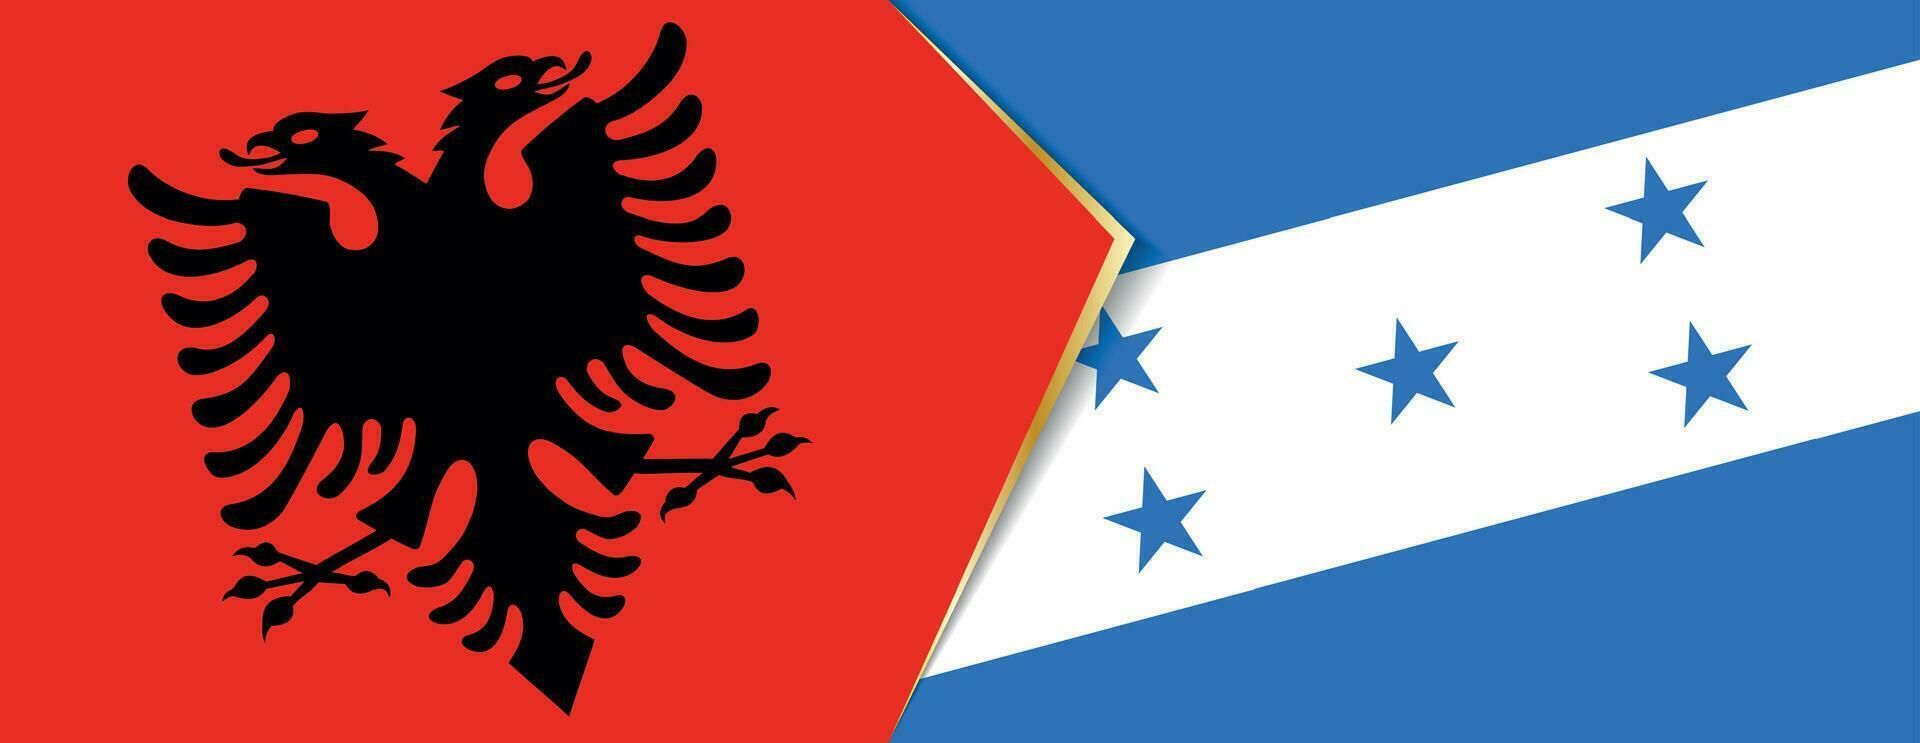 albania och honduras flaggor, två vektor flaggor.